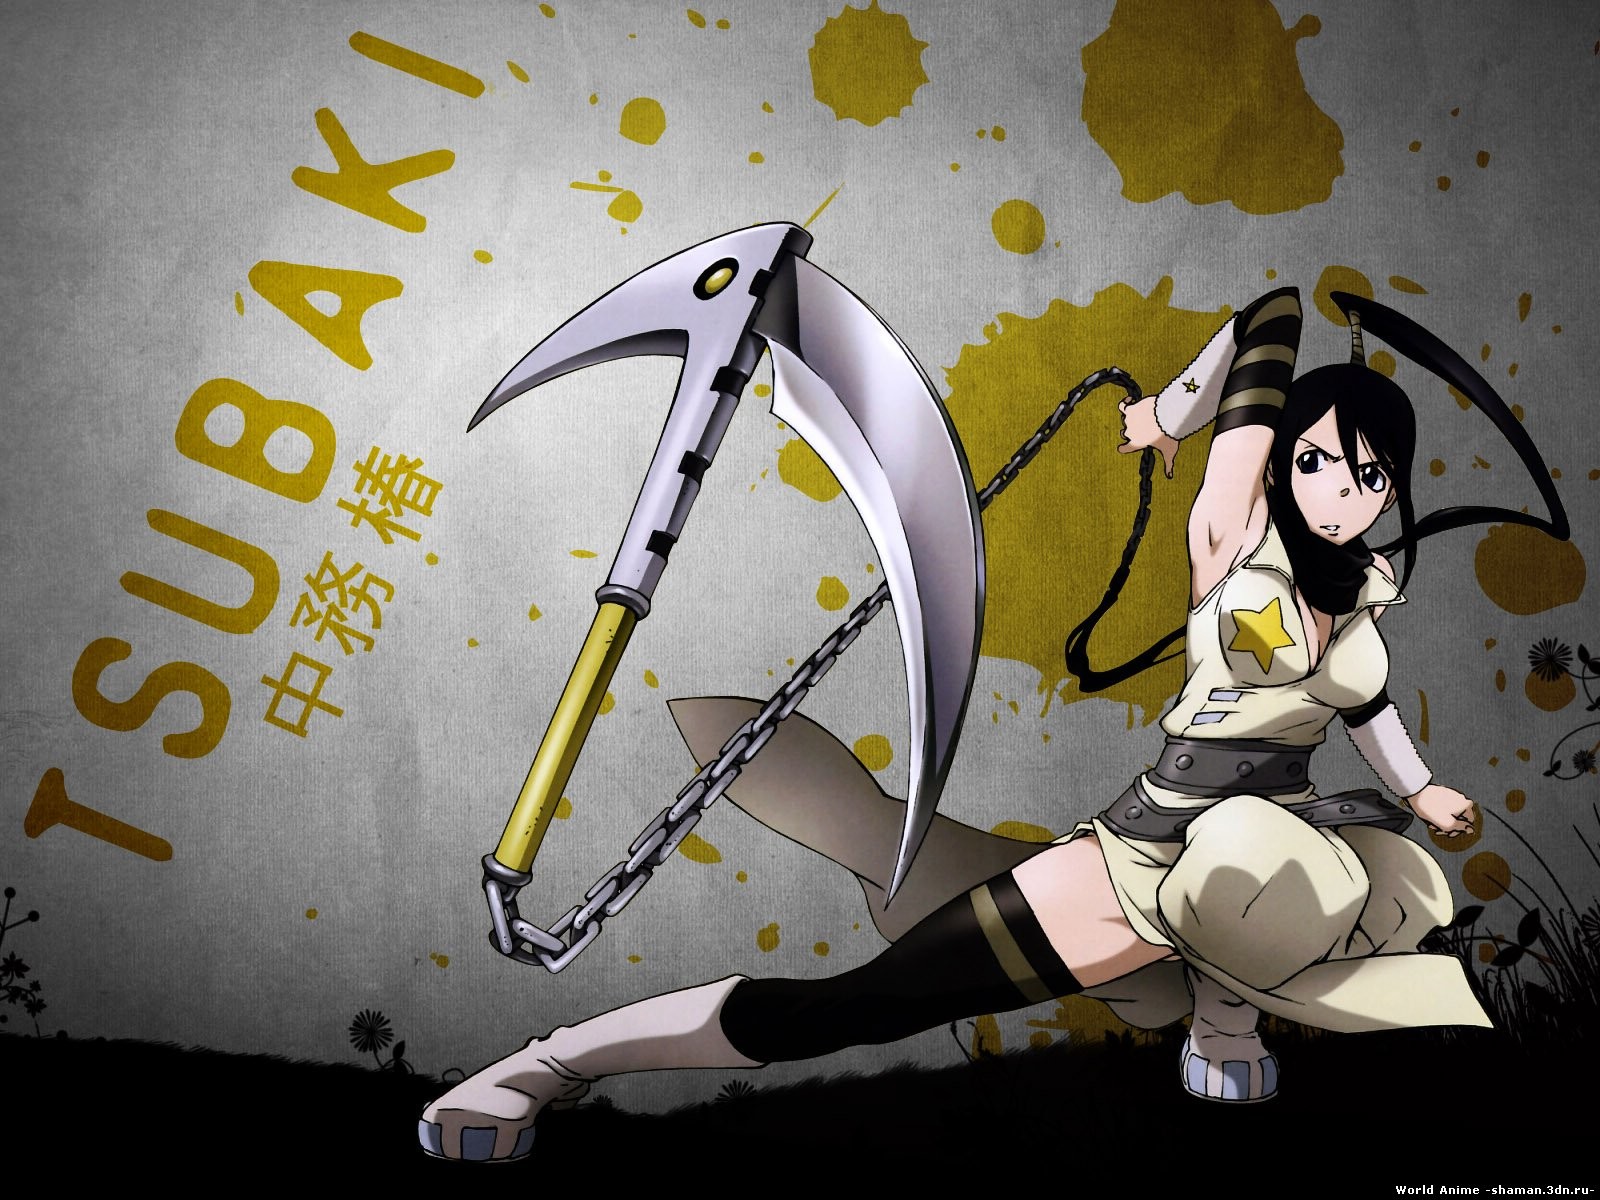 Anime 1600x1200 anime Soul Eater Tsubaki Nakatsukasa anime girls black hair warrior fantasy art fantasy girl weapon